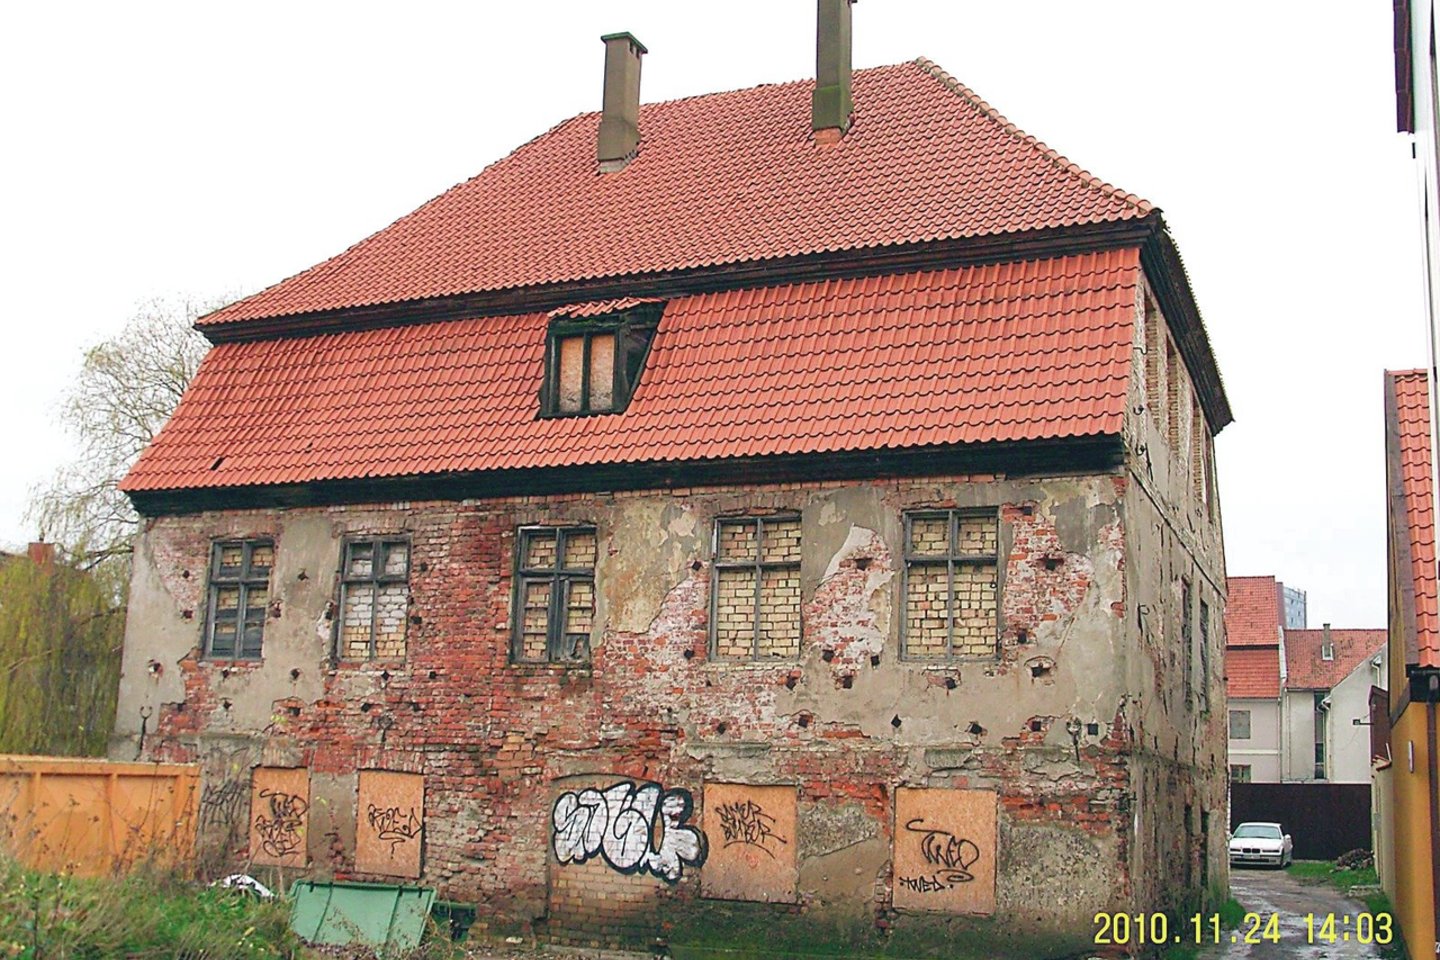 Taip atrodęs šimtametis namas Klaipėdos senamiestyje, Daržų gatvėje, pernai rugpjūtį buvo nugriautas slapta – jis ilgai slėptas po spalvingu tentu.<br>A.Pilaitienės nuotr.